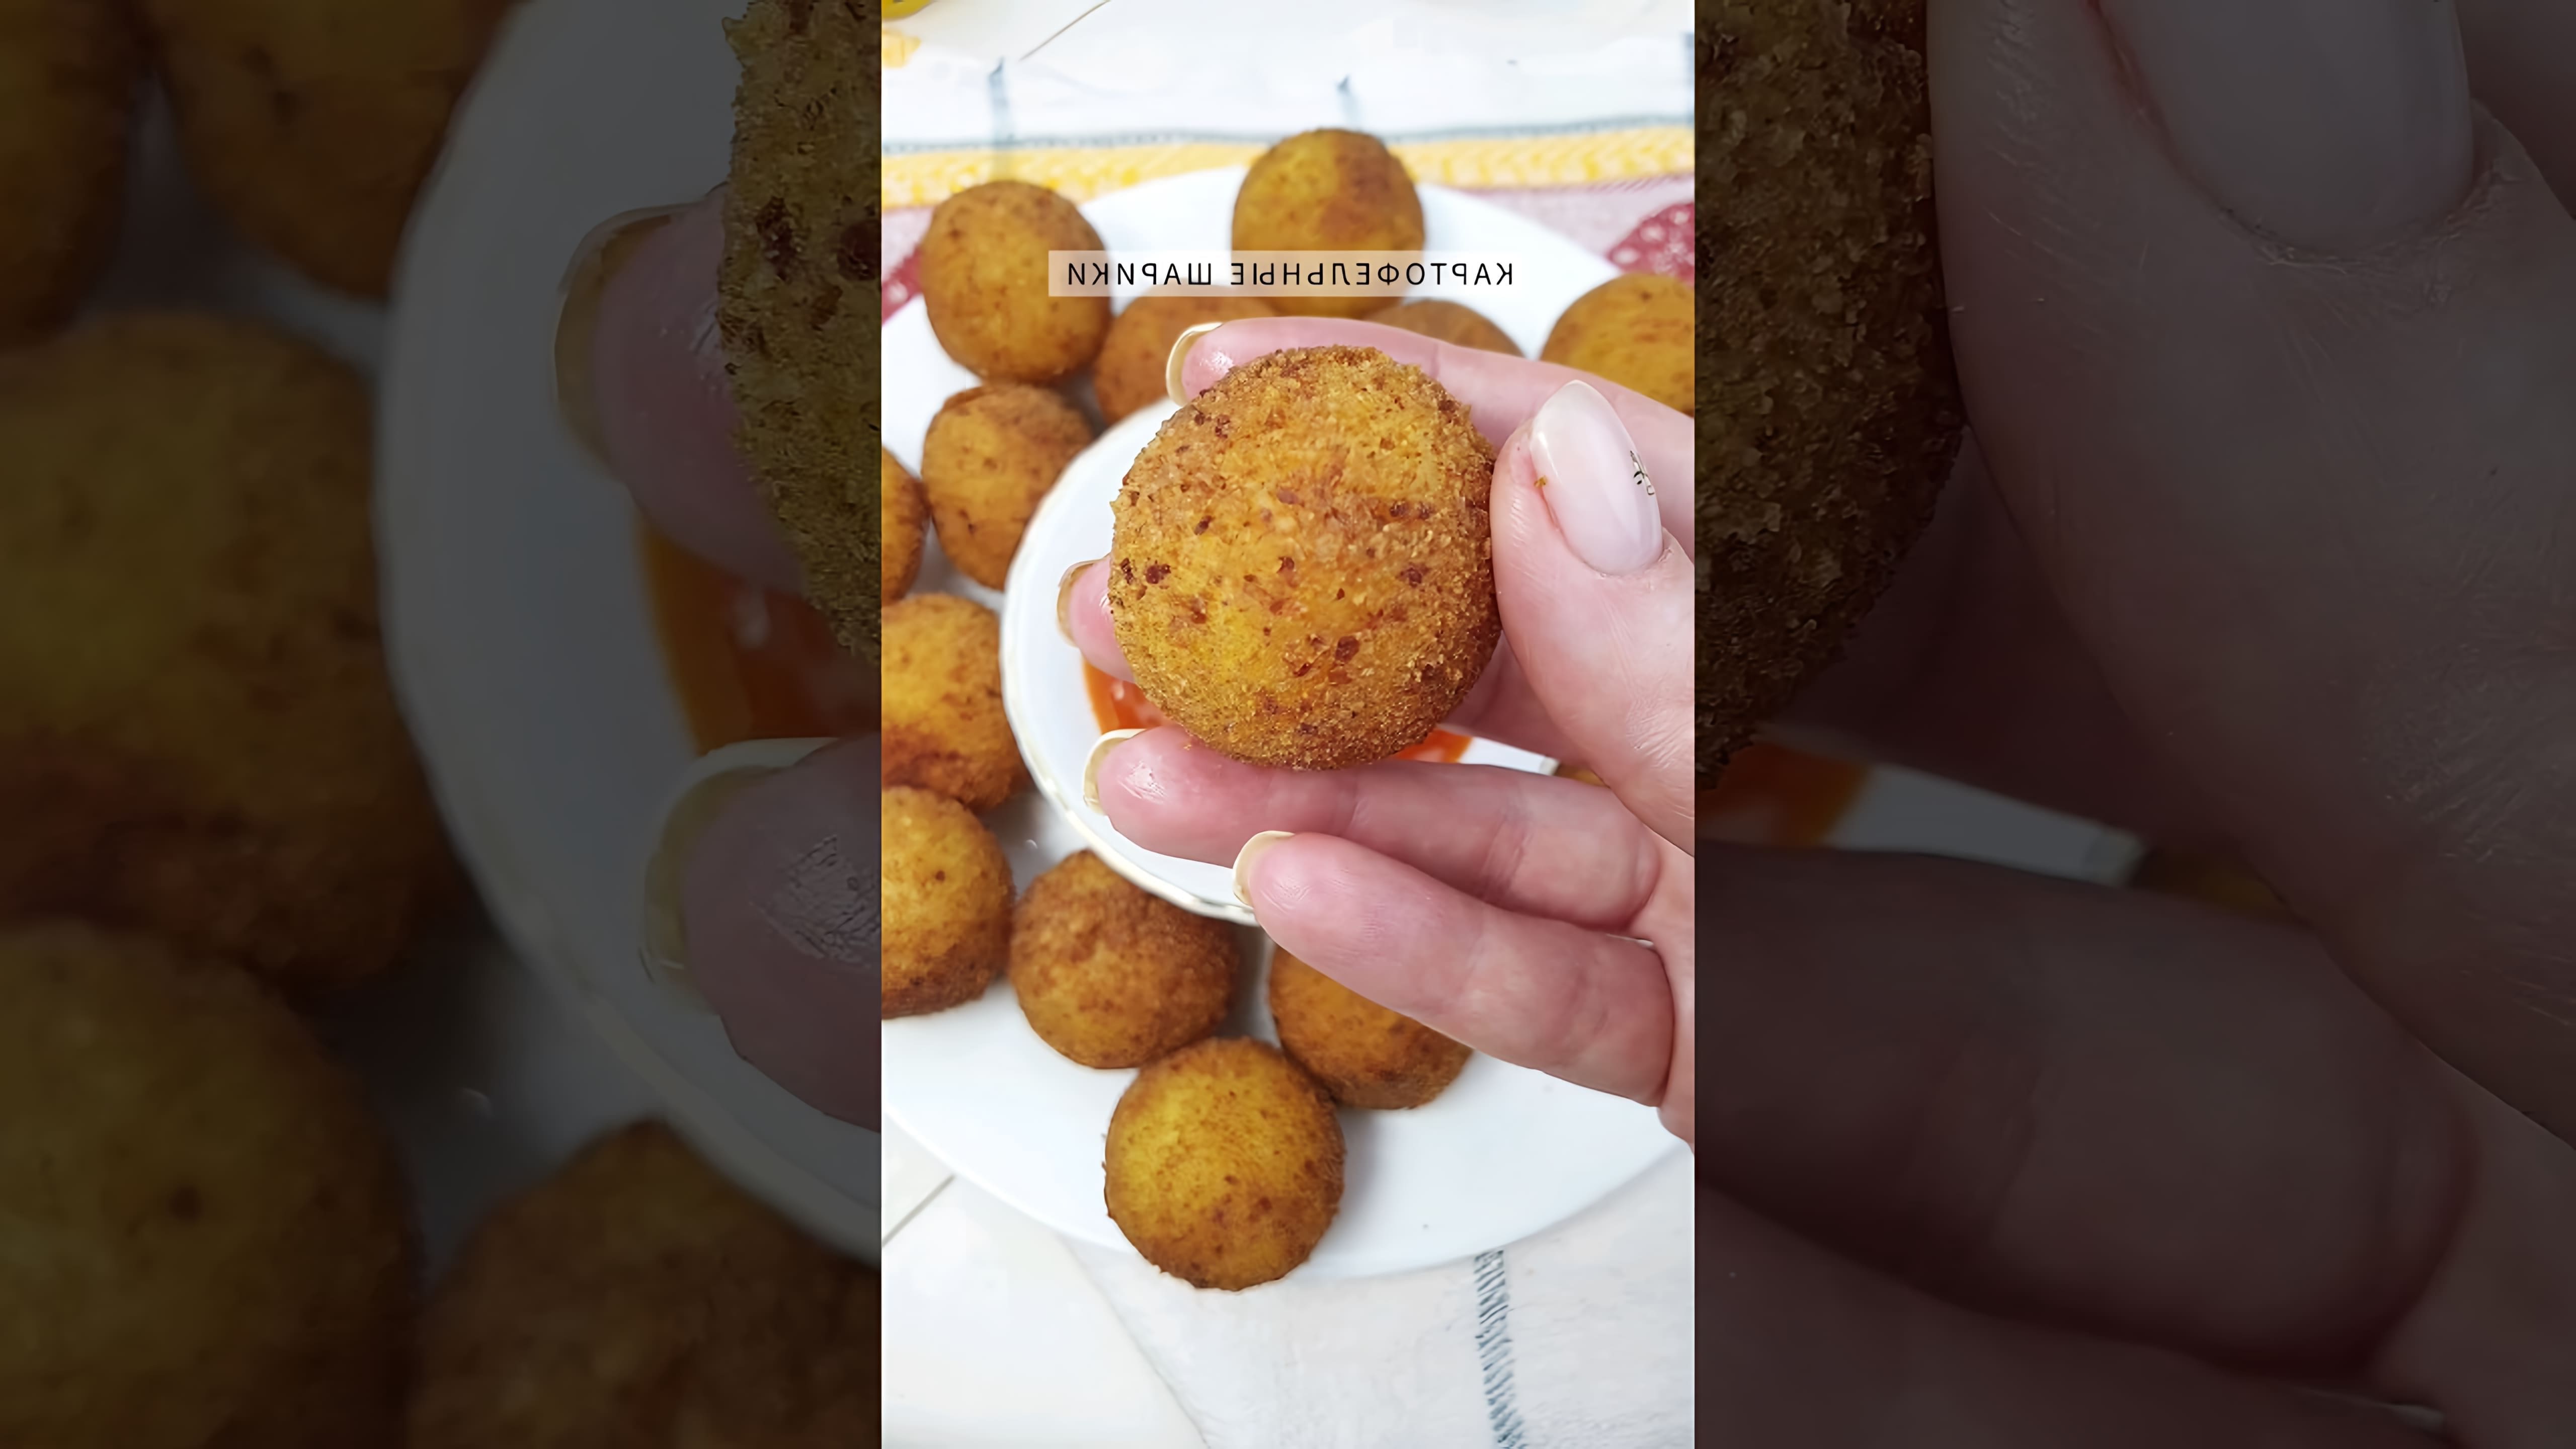 В этом видео демонстрируется процесс приготовления картофельных шариков